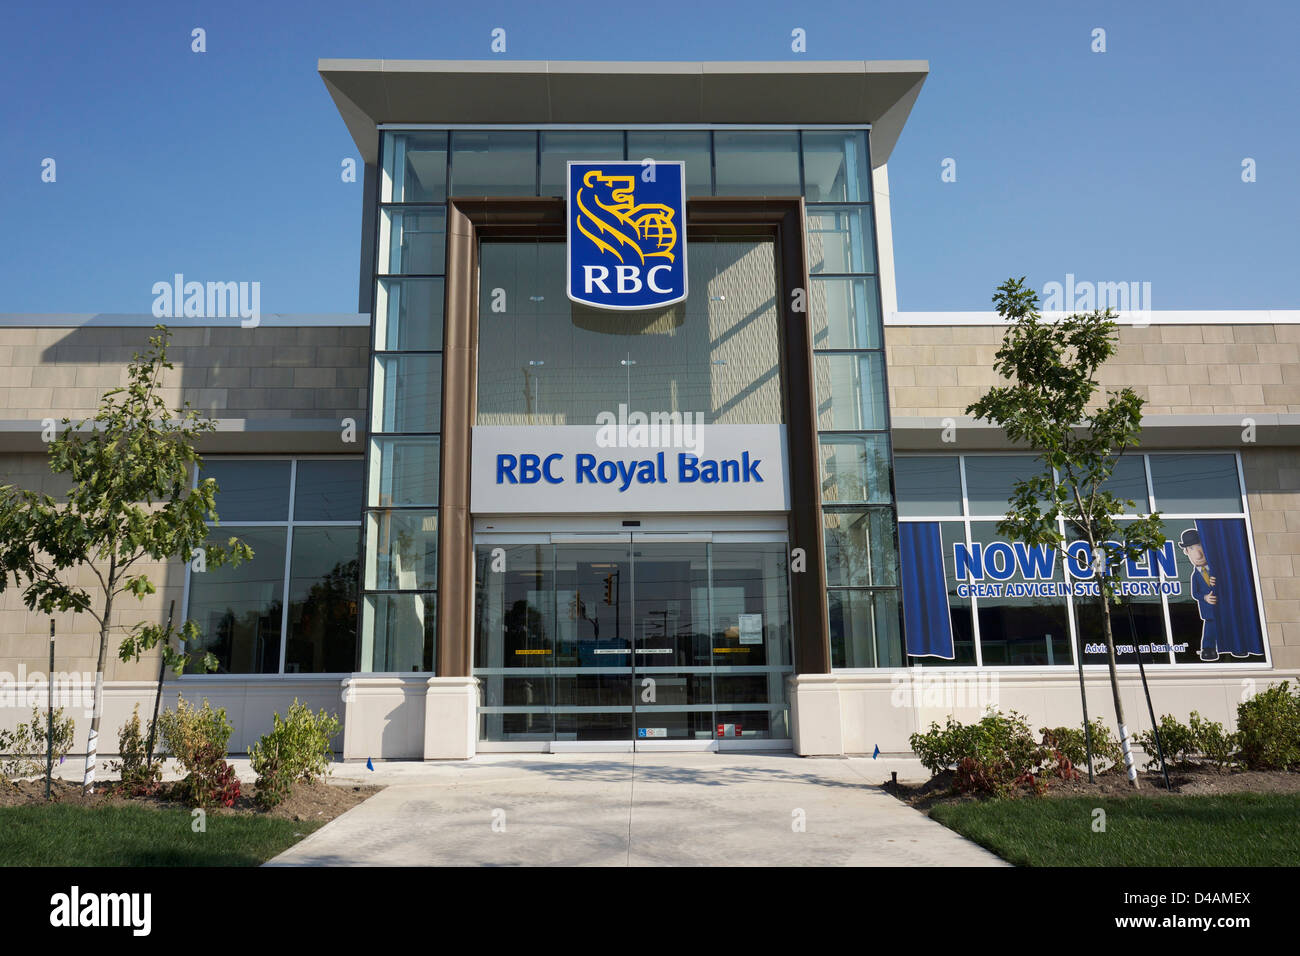 RBC Royal Bank of Canada Stock Photo